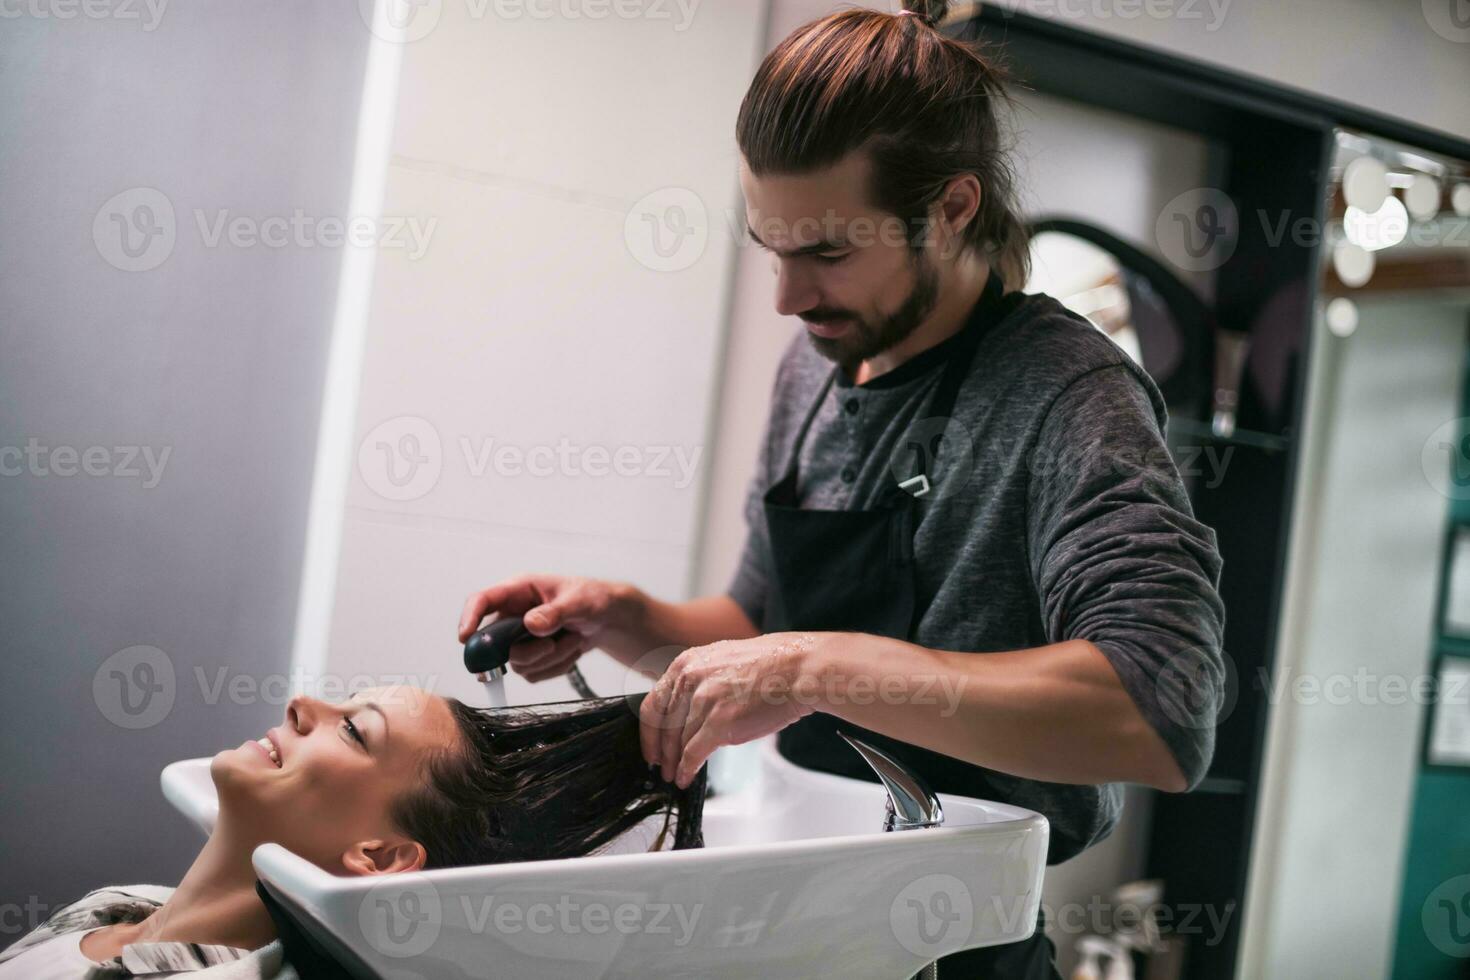 A woman at a hair salon photo